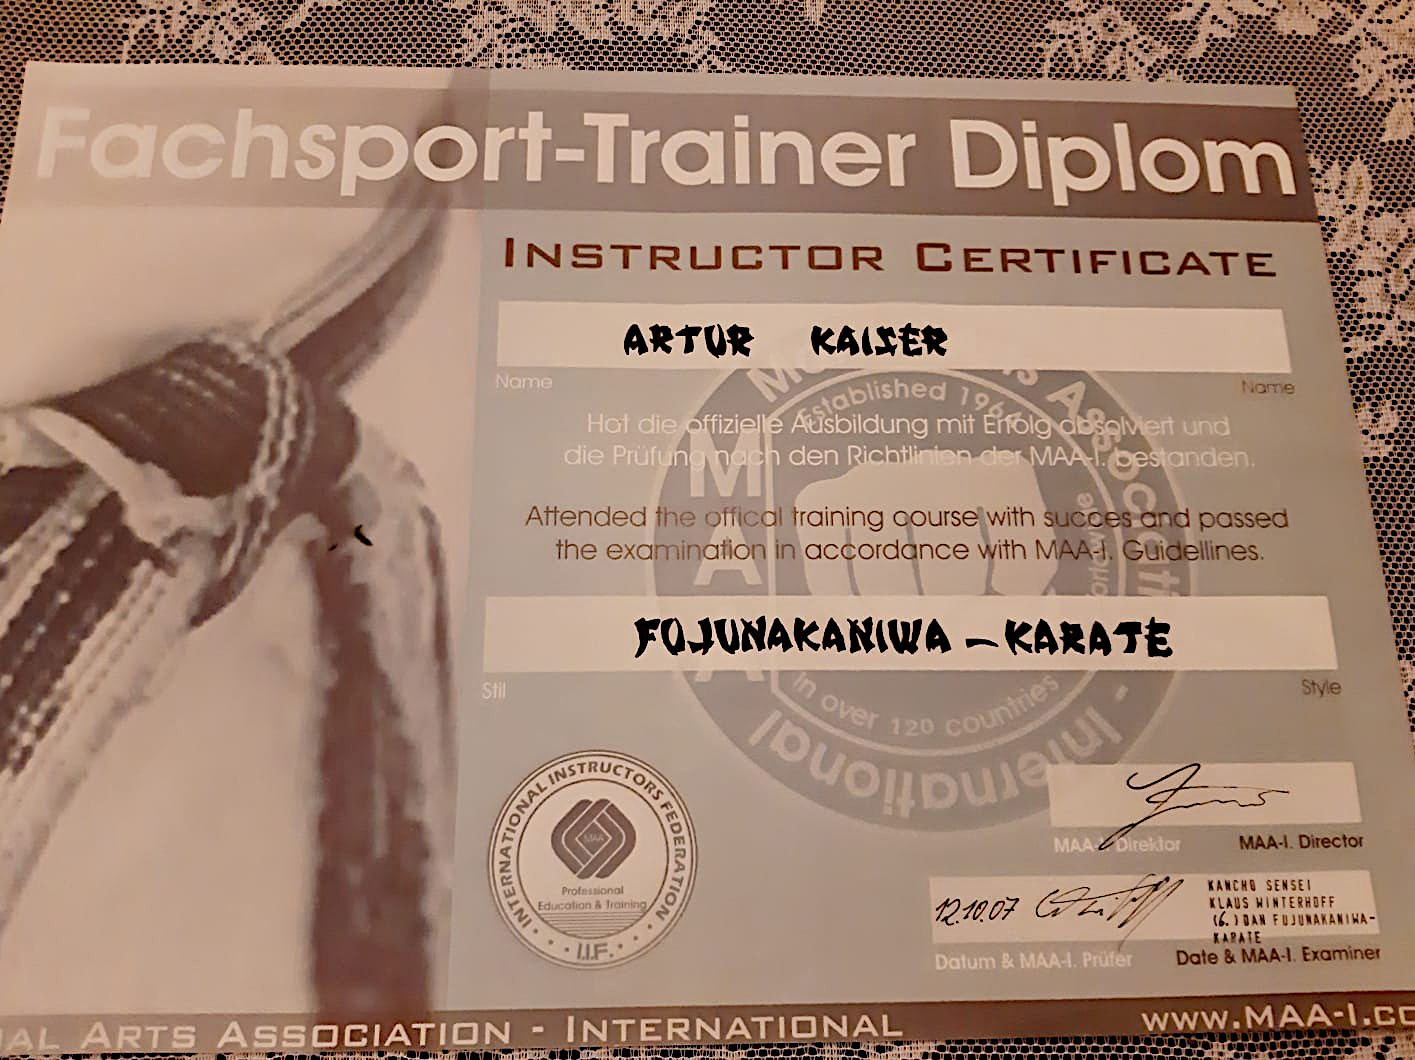 Bild vom Fachsport Trainer Diplom Artur Kaiser in Fujunakaniwa- Karate